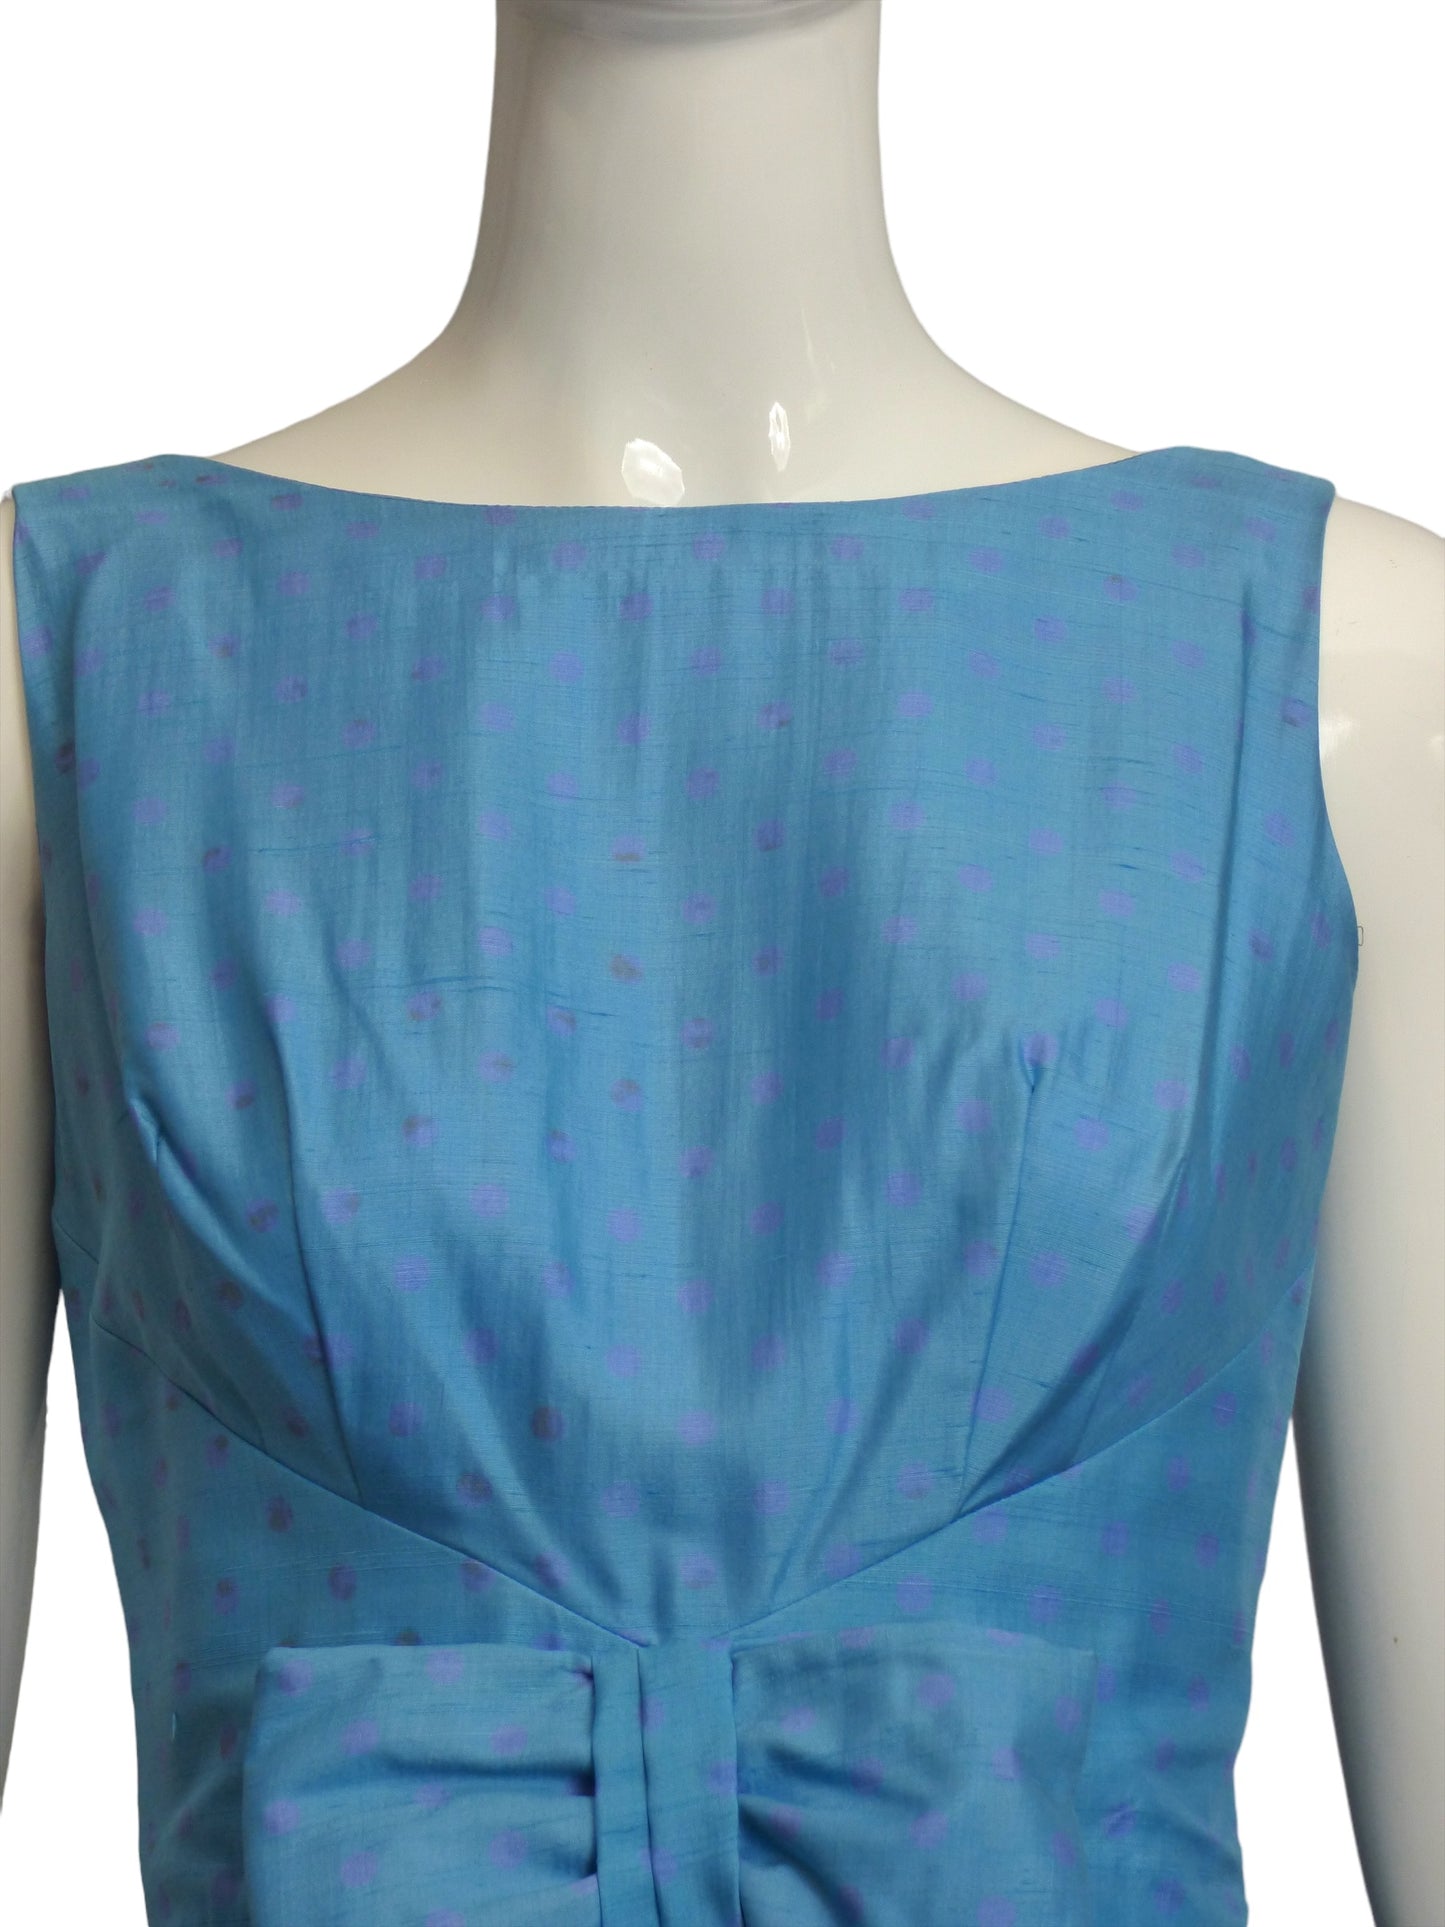 1950s Silk Print Bubble Dress, Size 4